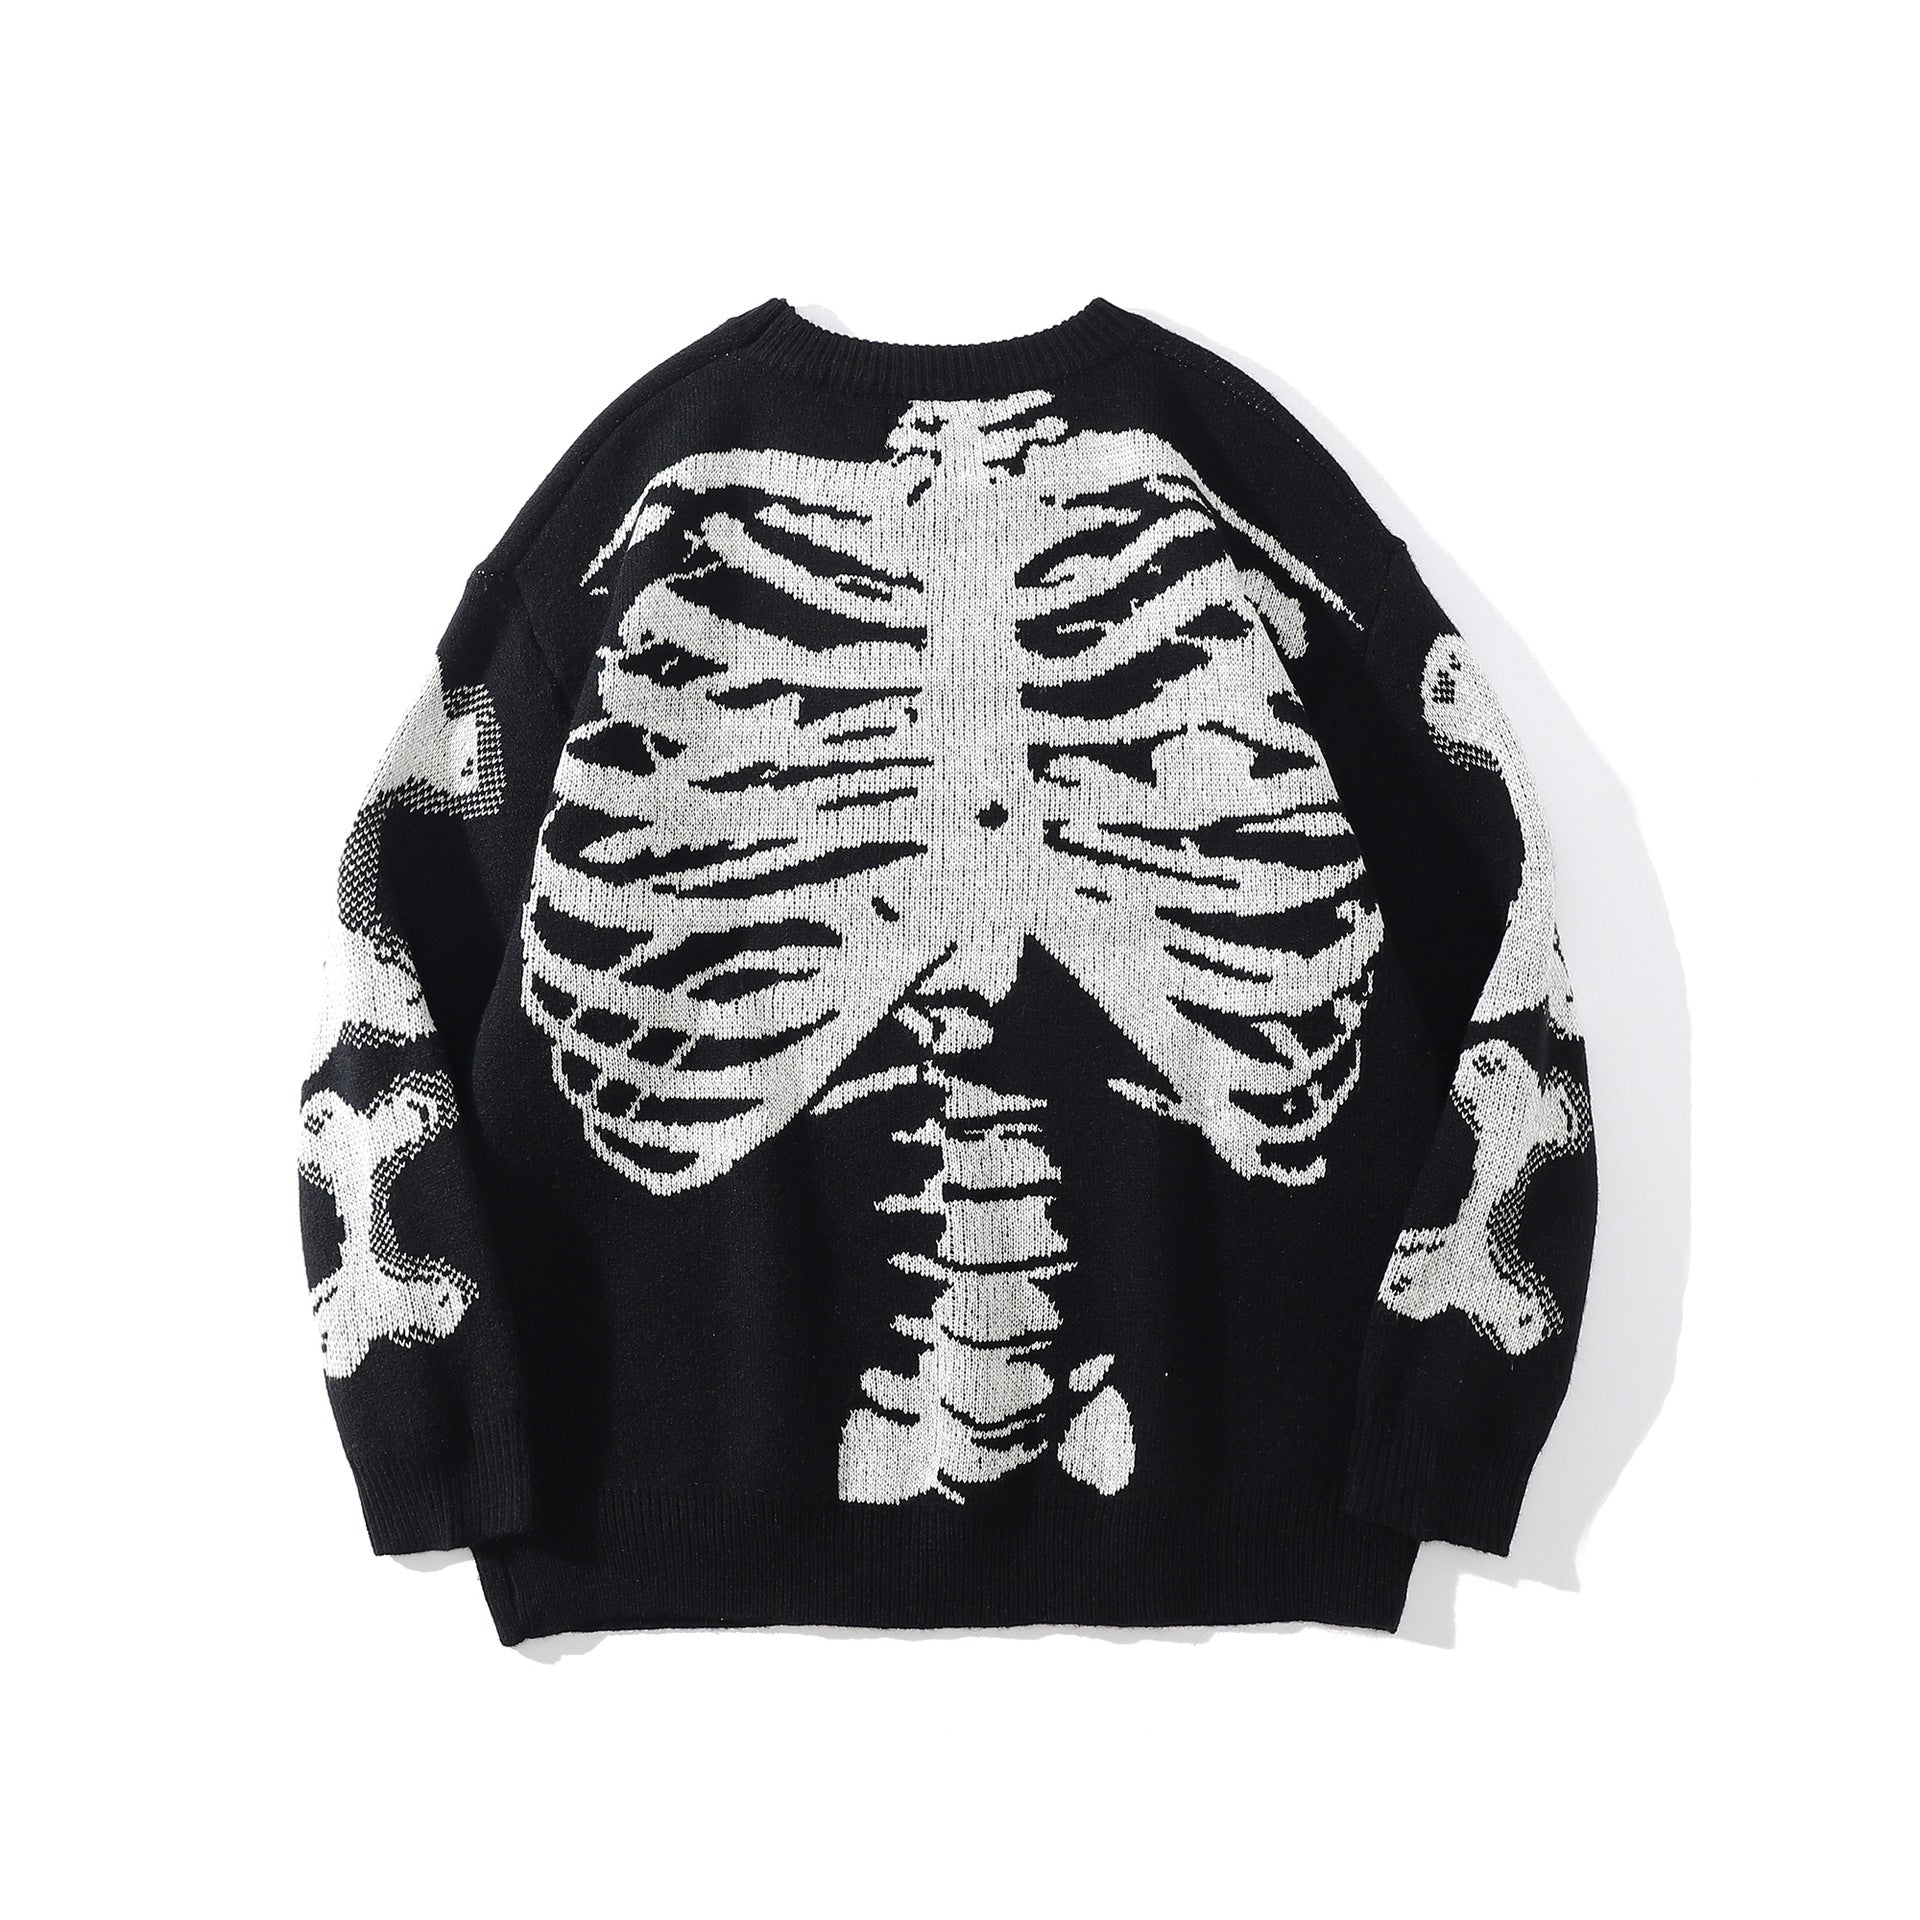 Skeleton Kecks and money chibi shirt, hoodie, sweater, long sleeve